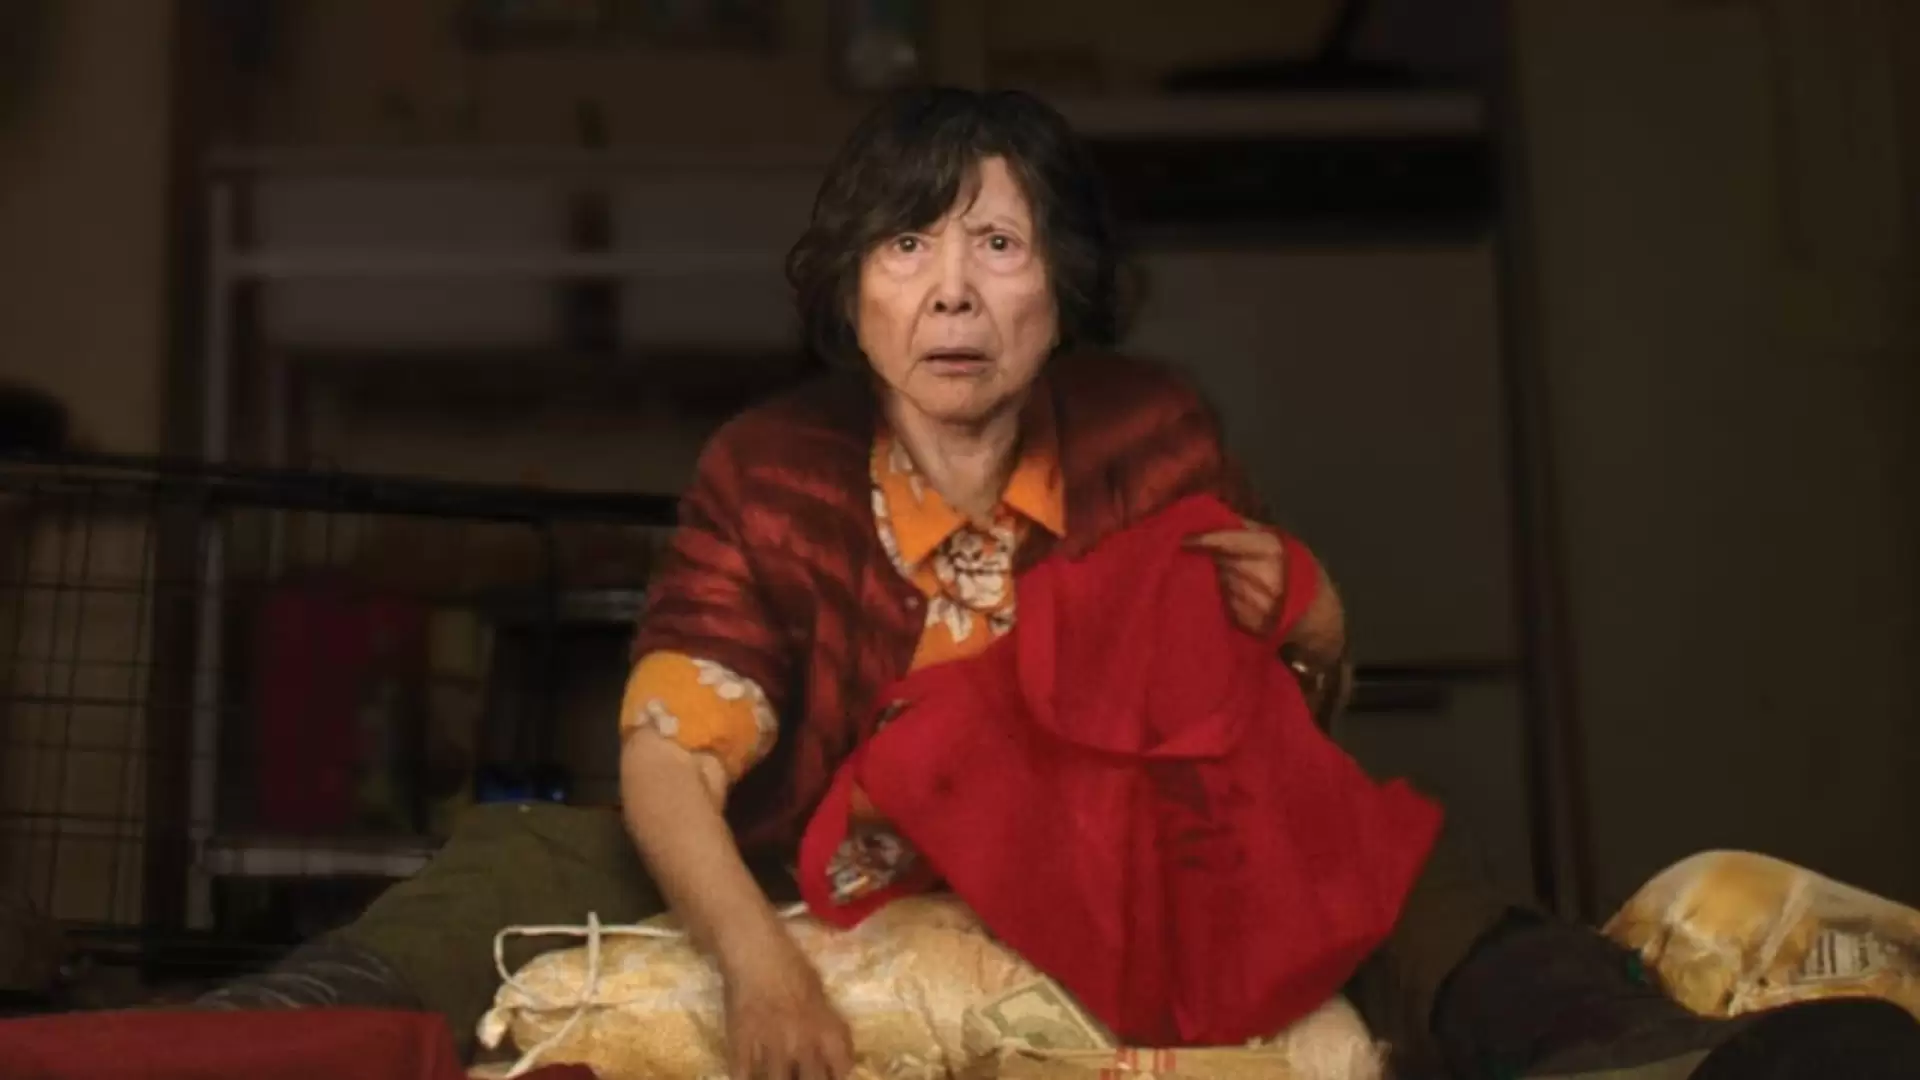 دانلود فیلم Lucky Grandma 2019 (مادربزرگ خوش شانس) با زیرنویس فارسی و تماشای آنلاین